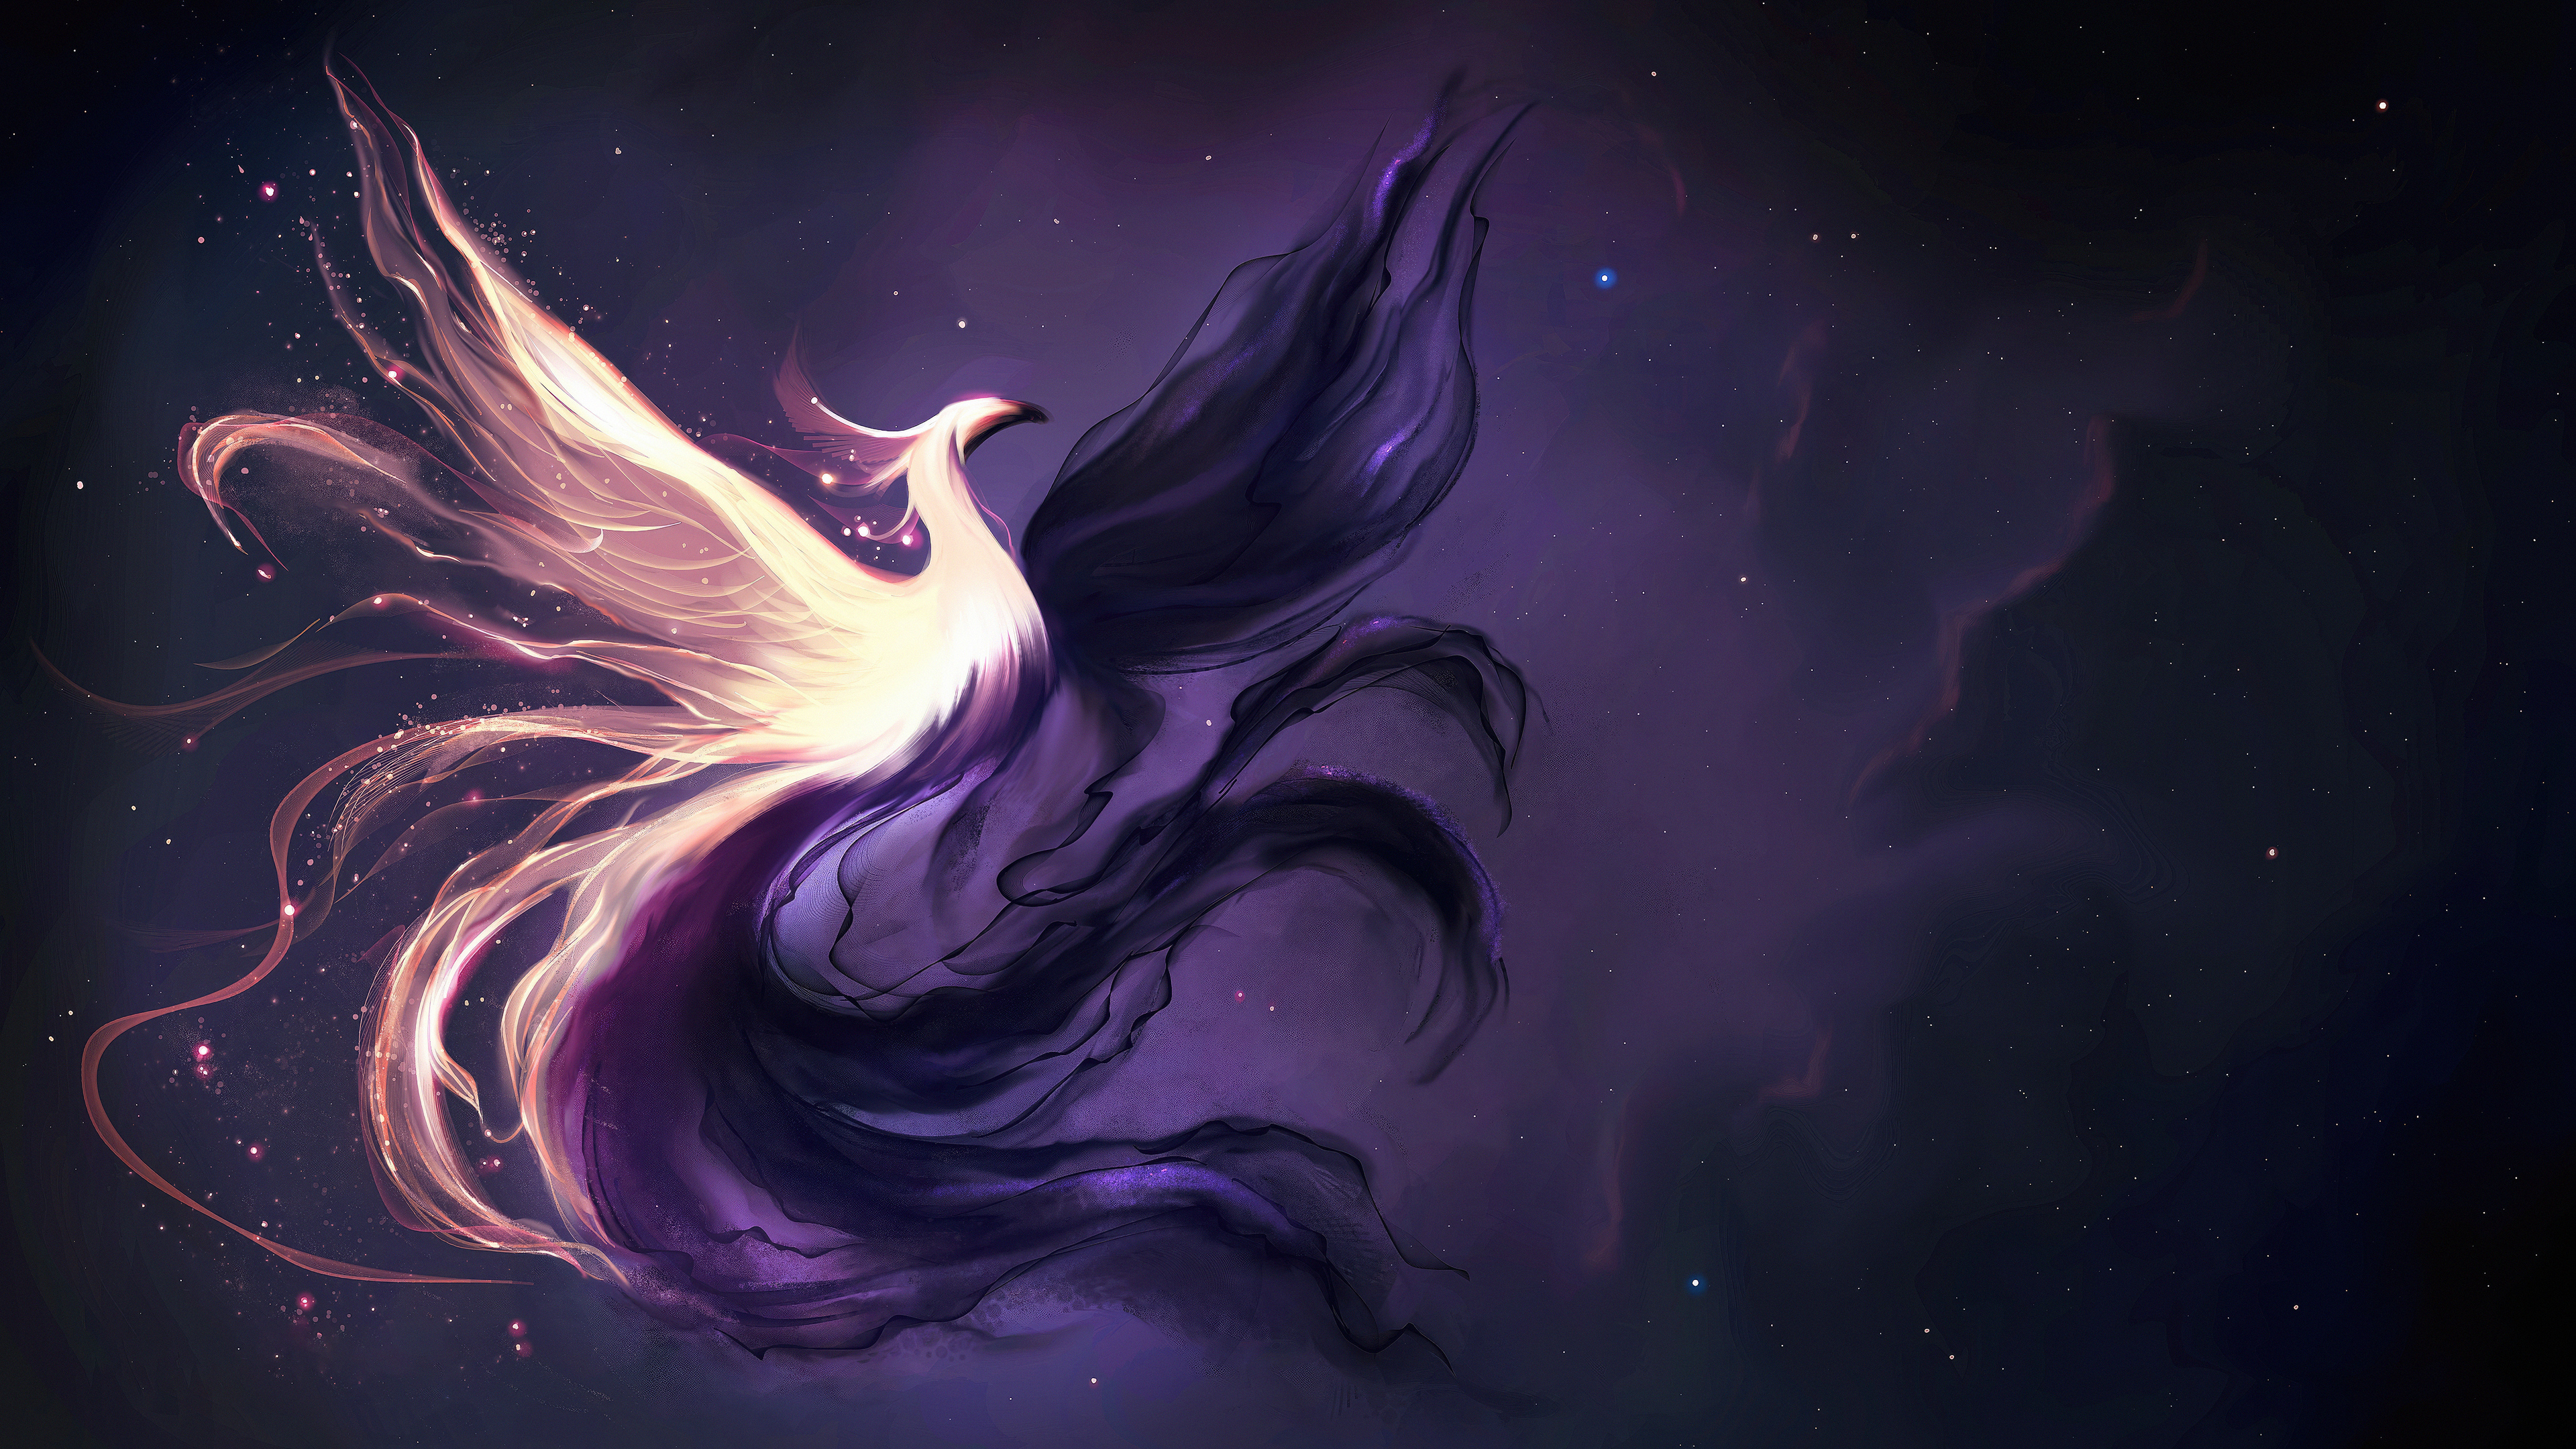 Phoenix Light And Darkness by Anna Zeller